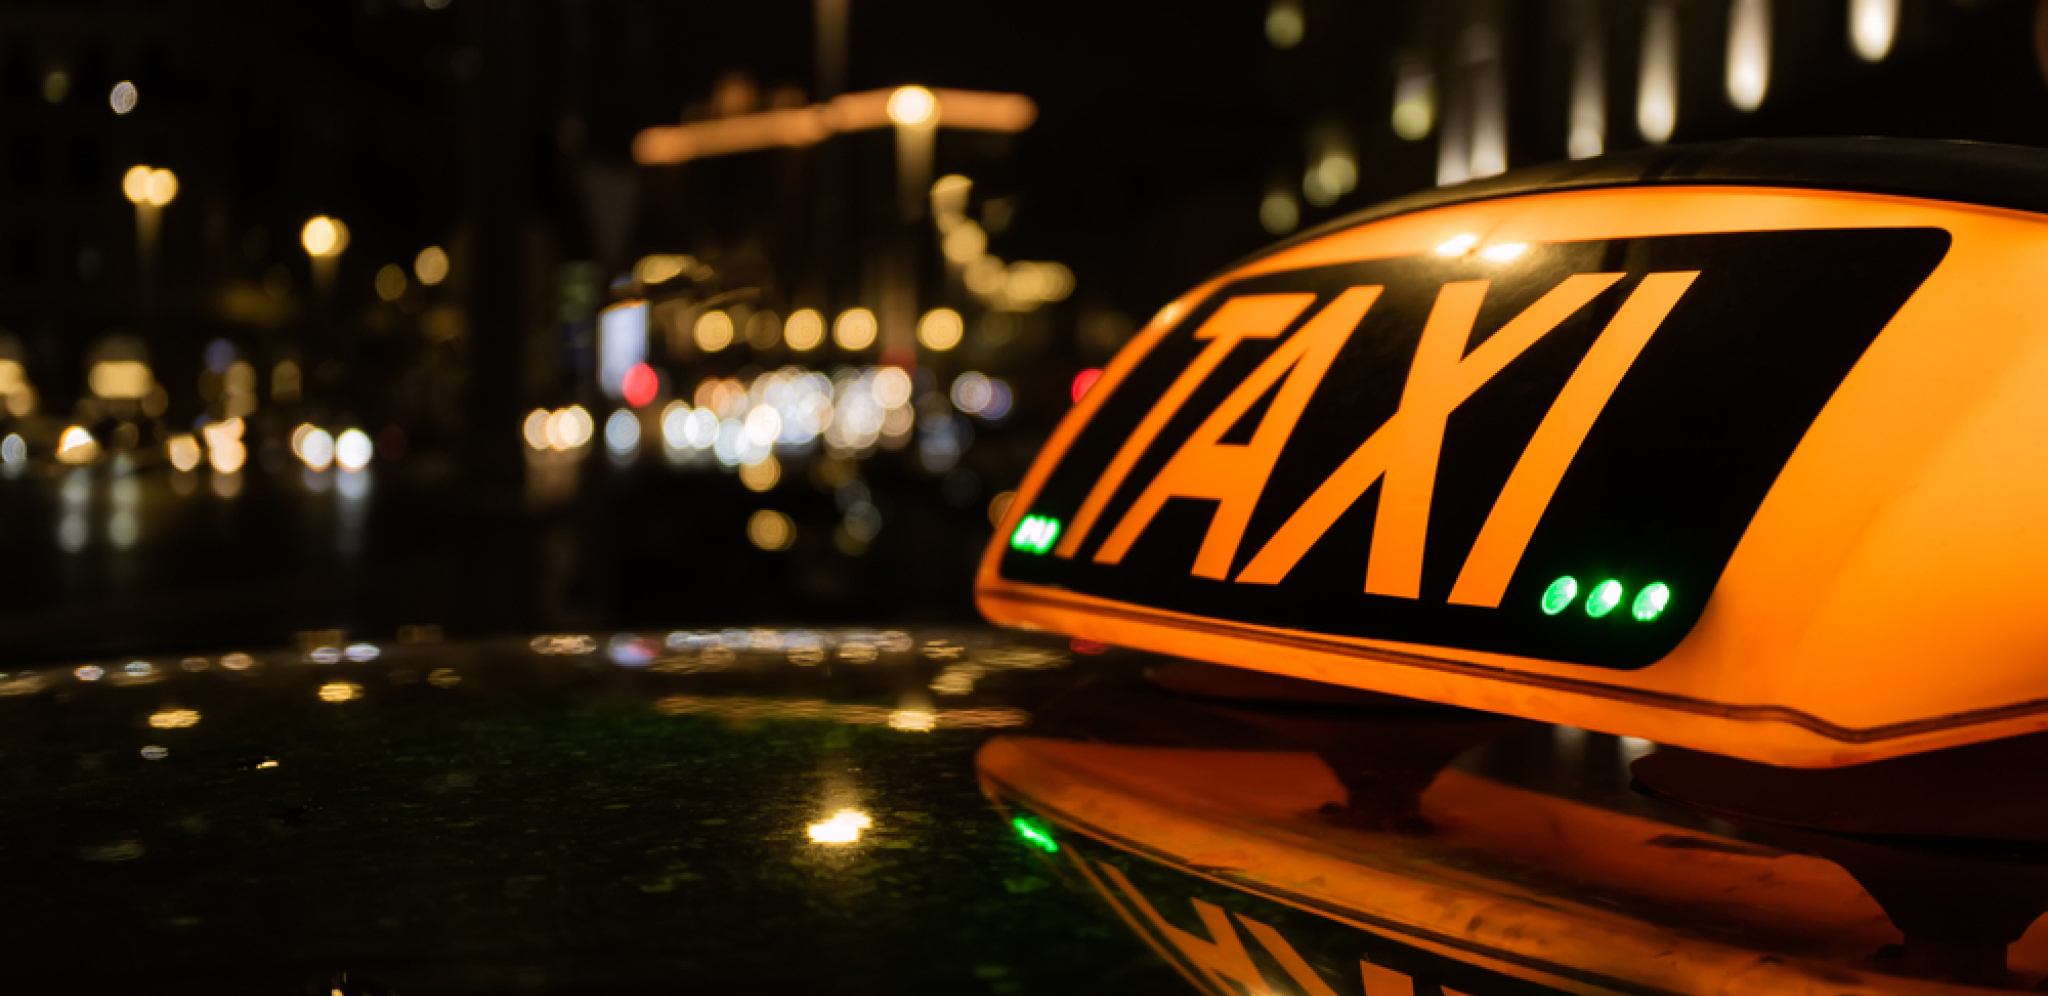 Novi taxi podneo zahtev za 500 dozvola ali još uvek bez odgovora